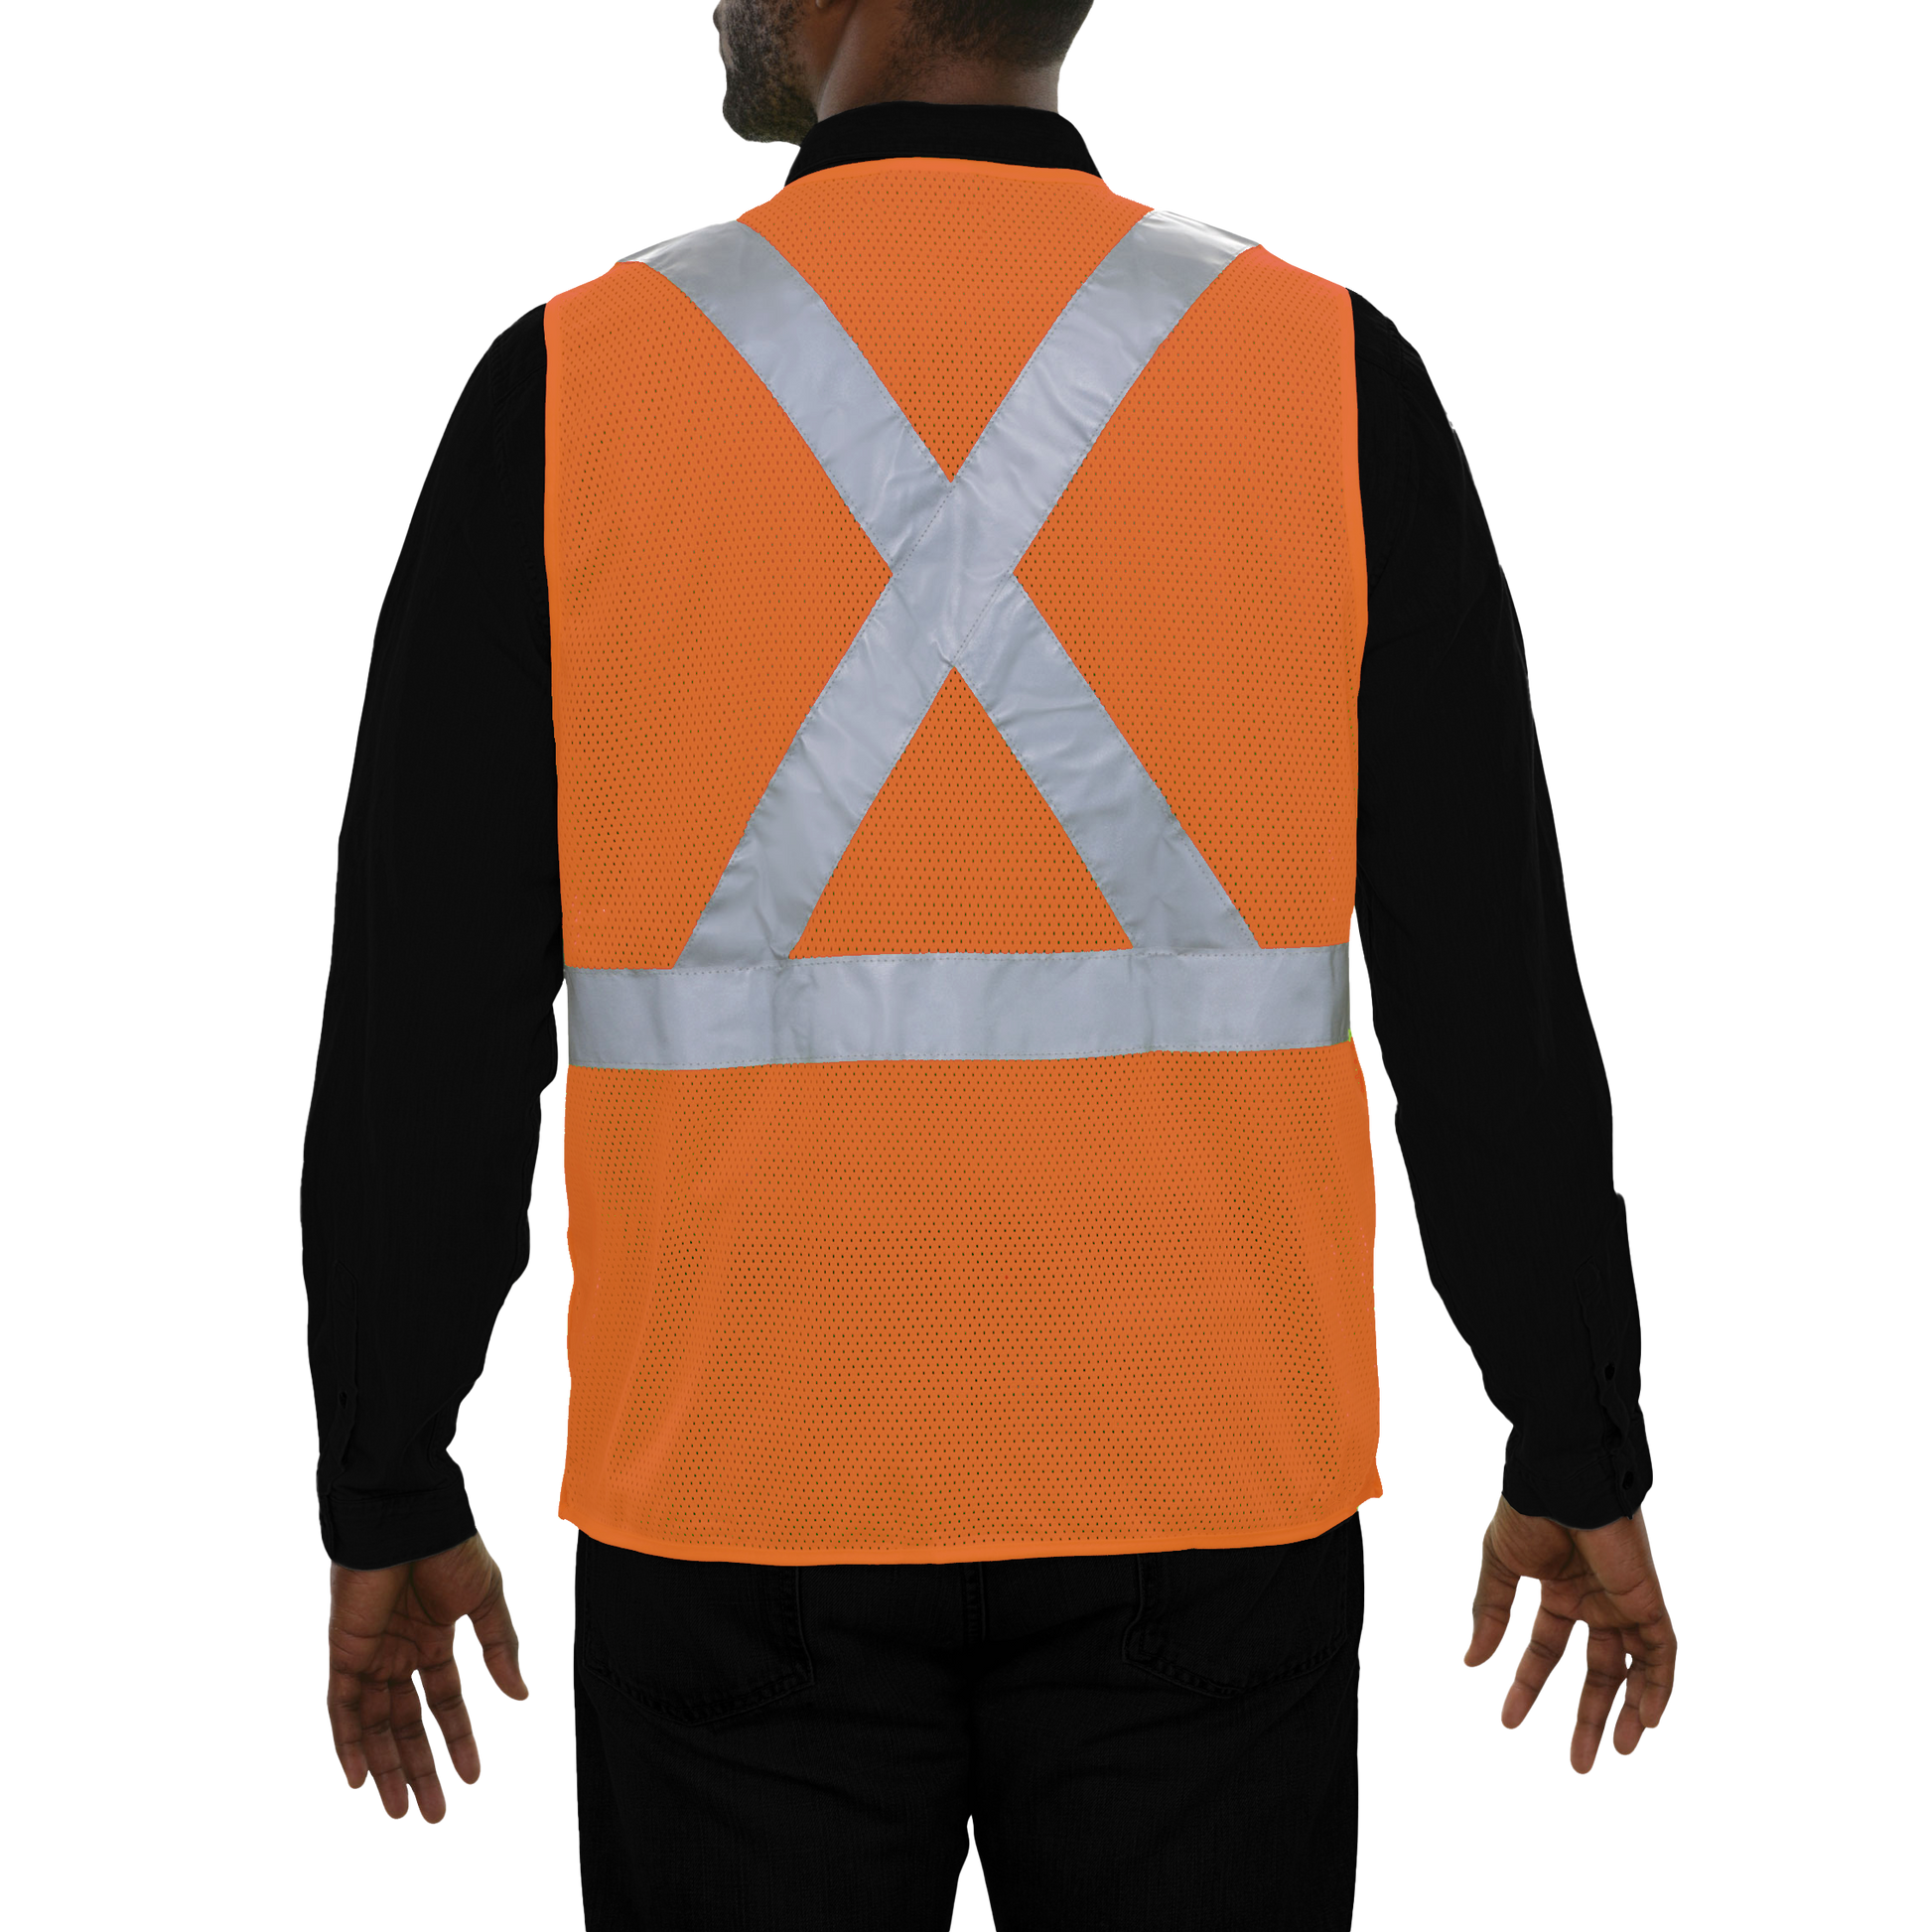 502SXOR Safety Vest: Hi-Vis Vest: X-Back Orange: 5pt Breakaway Mesh: ANSI 2